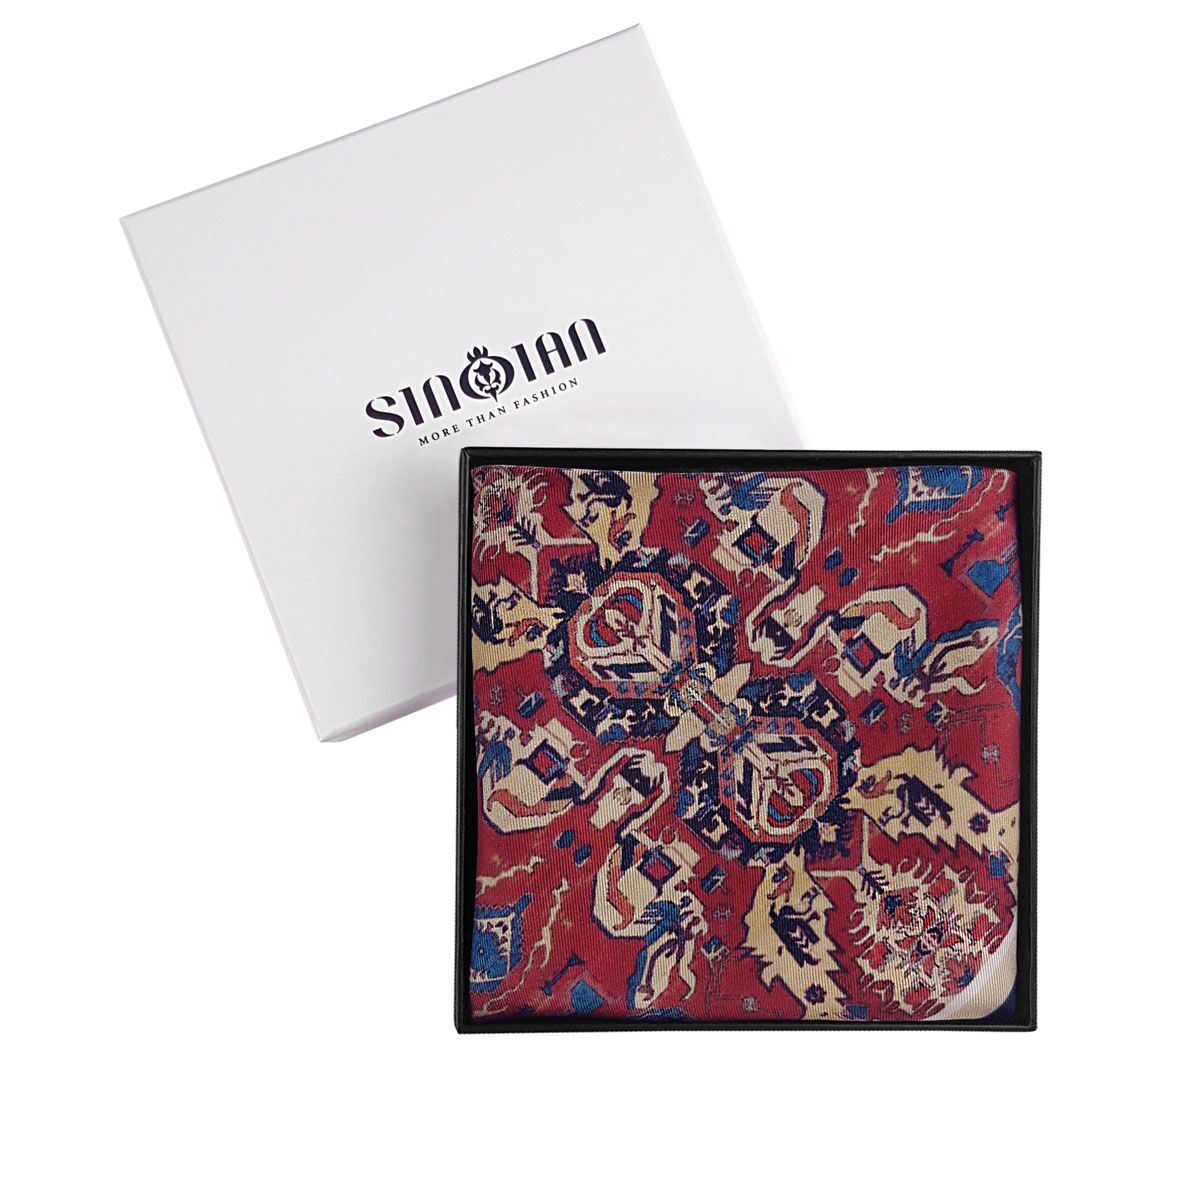 Ethnic Silk Pocket Square in accessories box